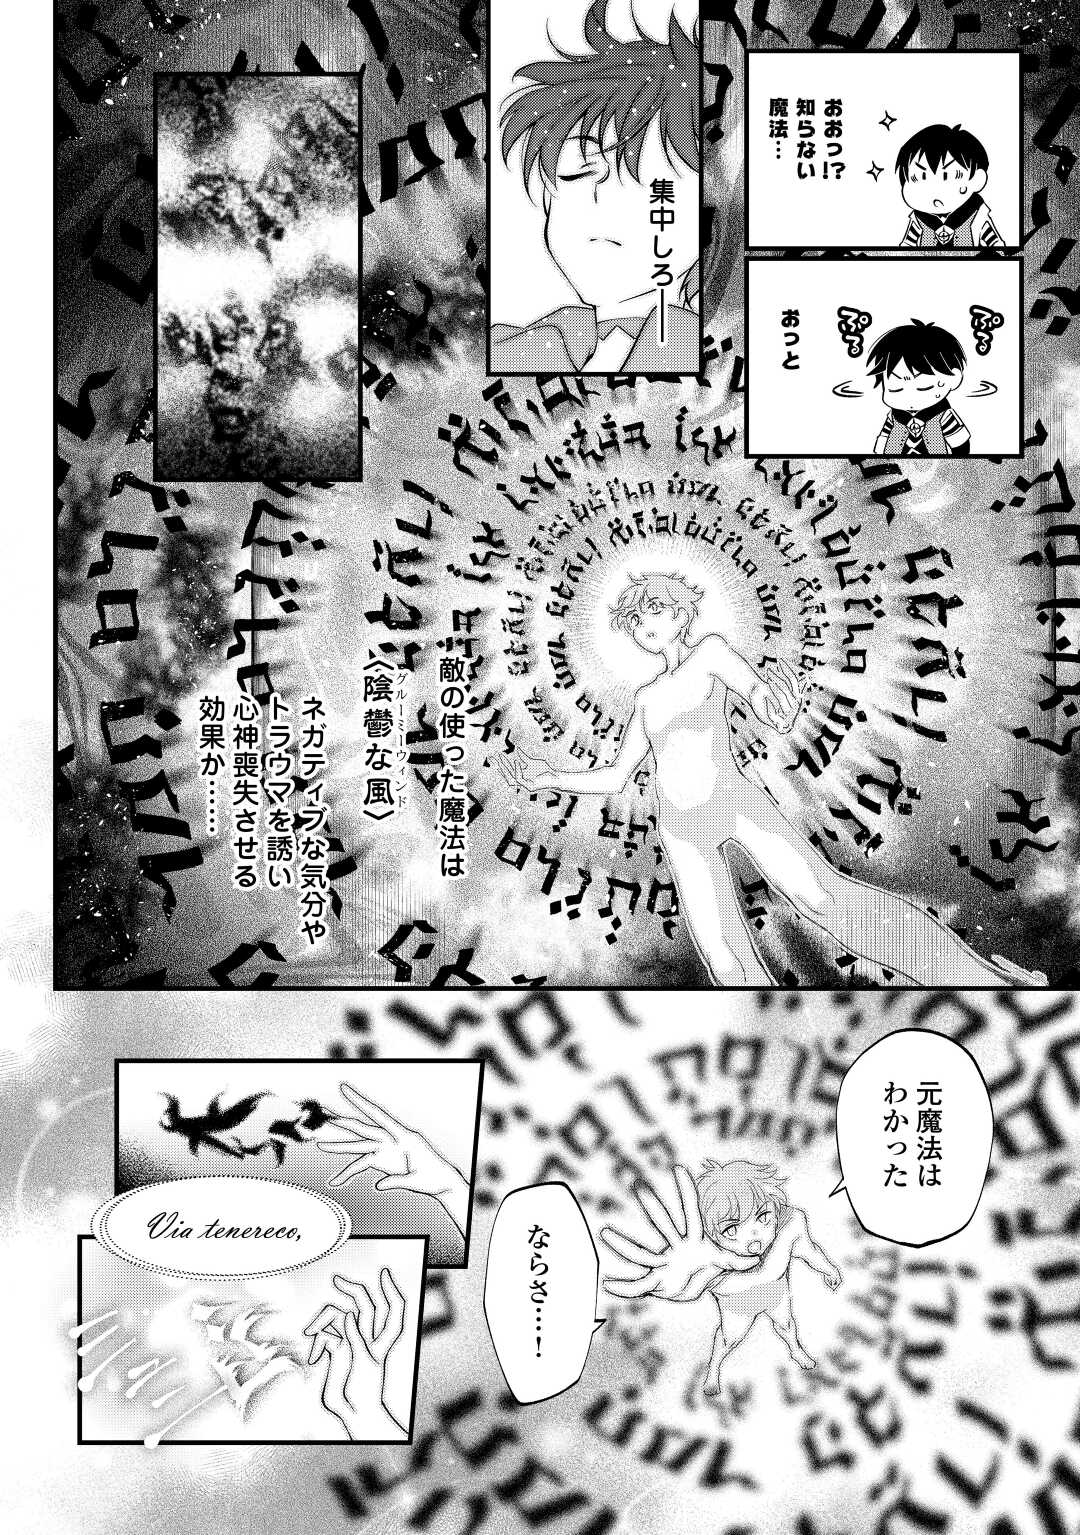 Ochikobore 1 Mahou Tsukai wa, Kyou mo Muishiki ni Cheat o Tsukau - Chapter 18 - Page 2